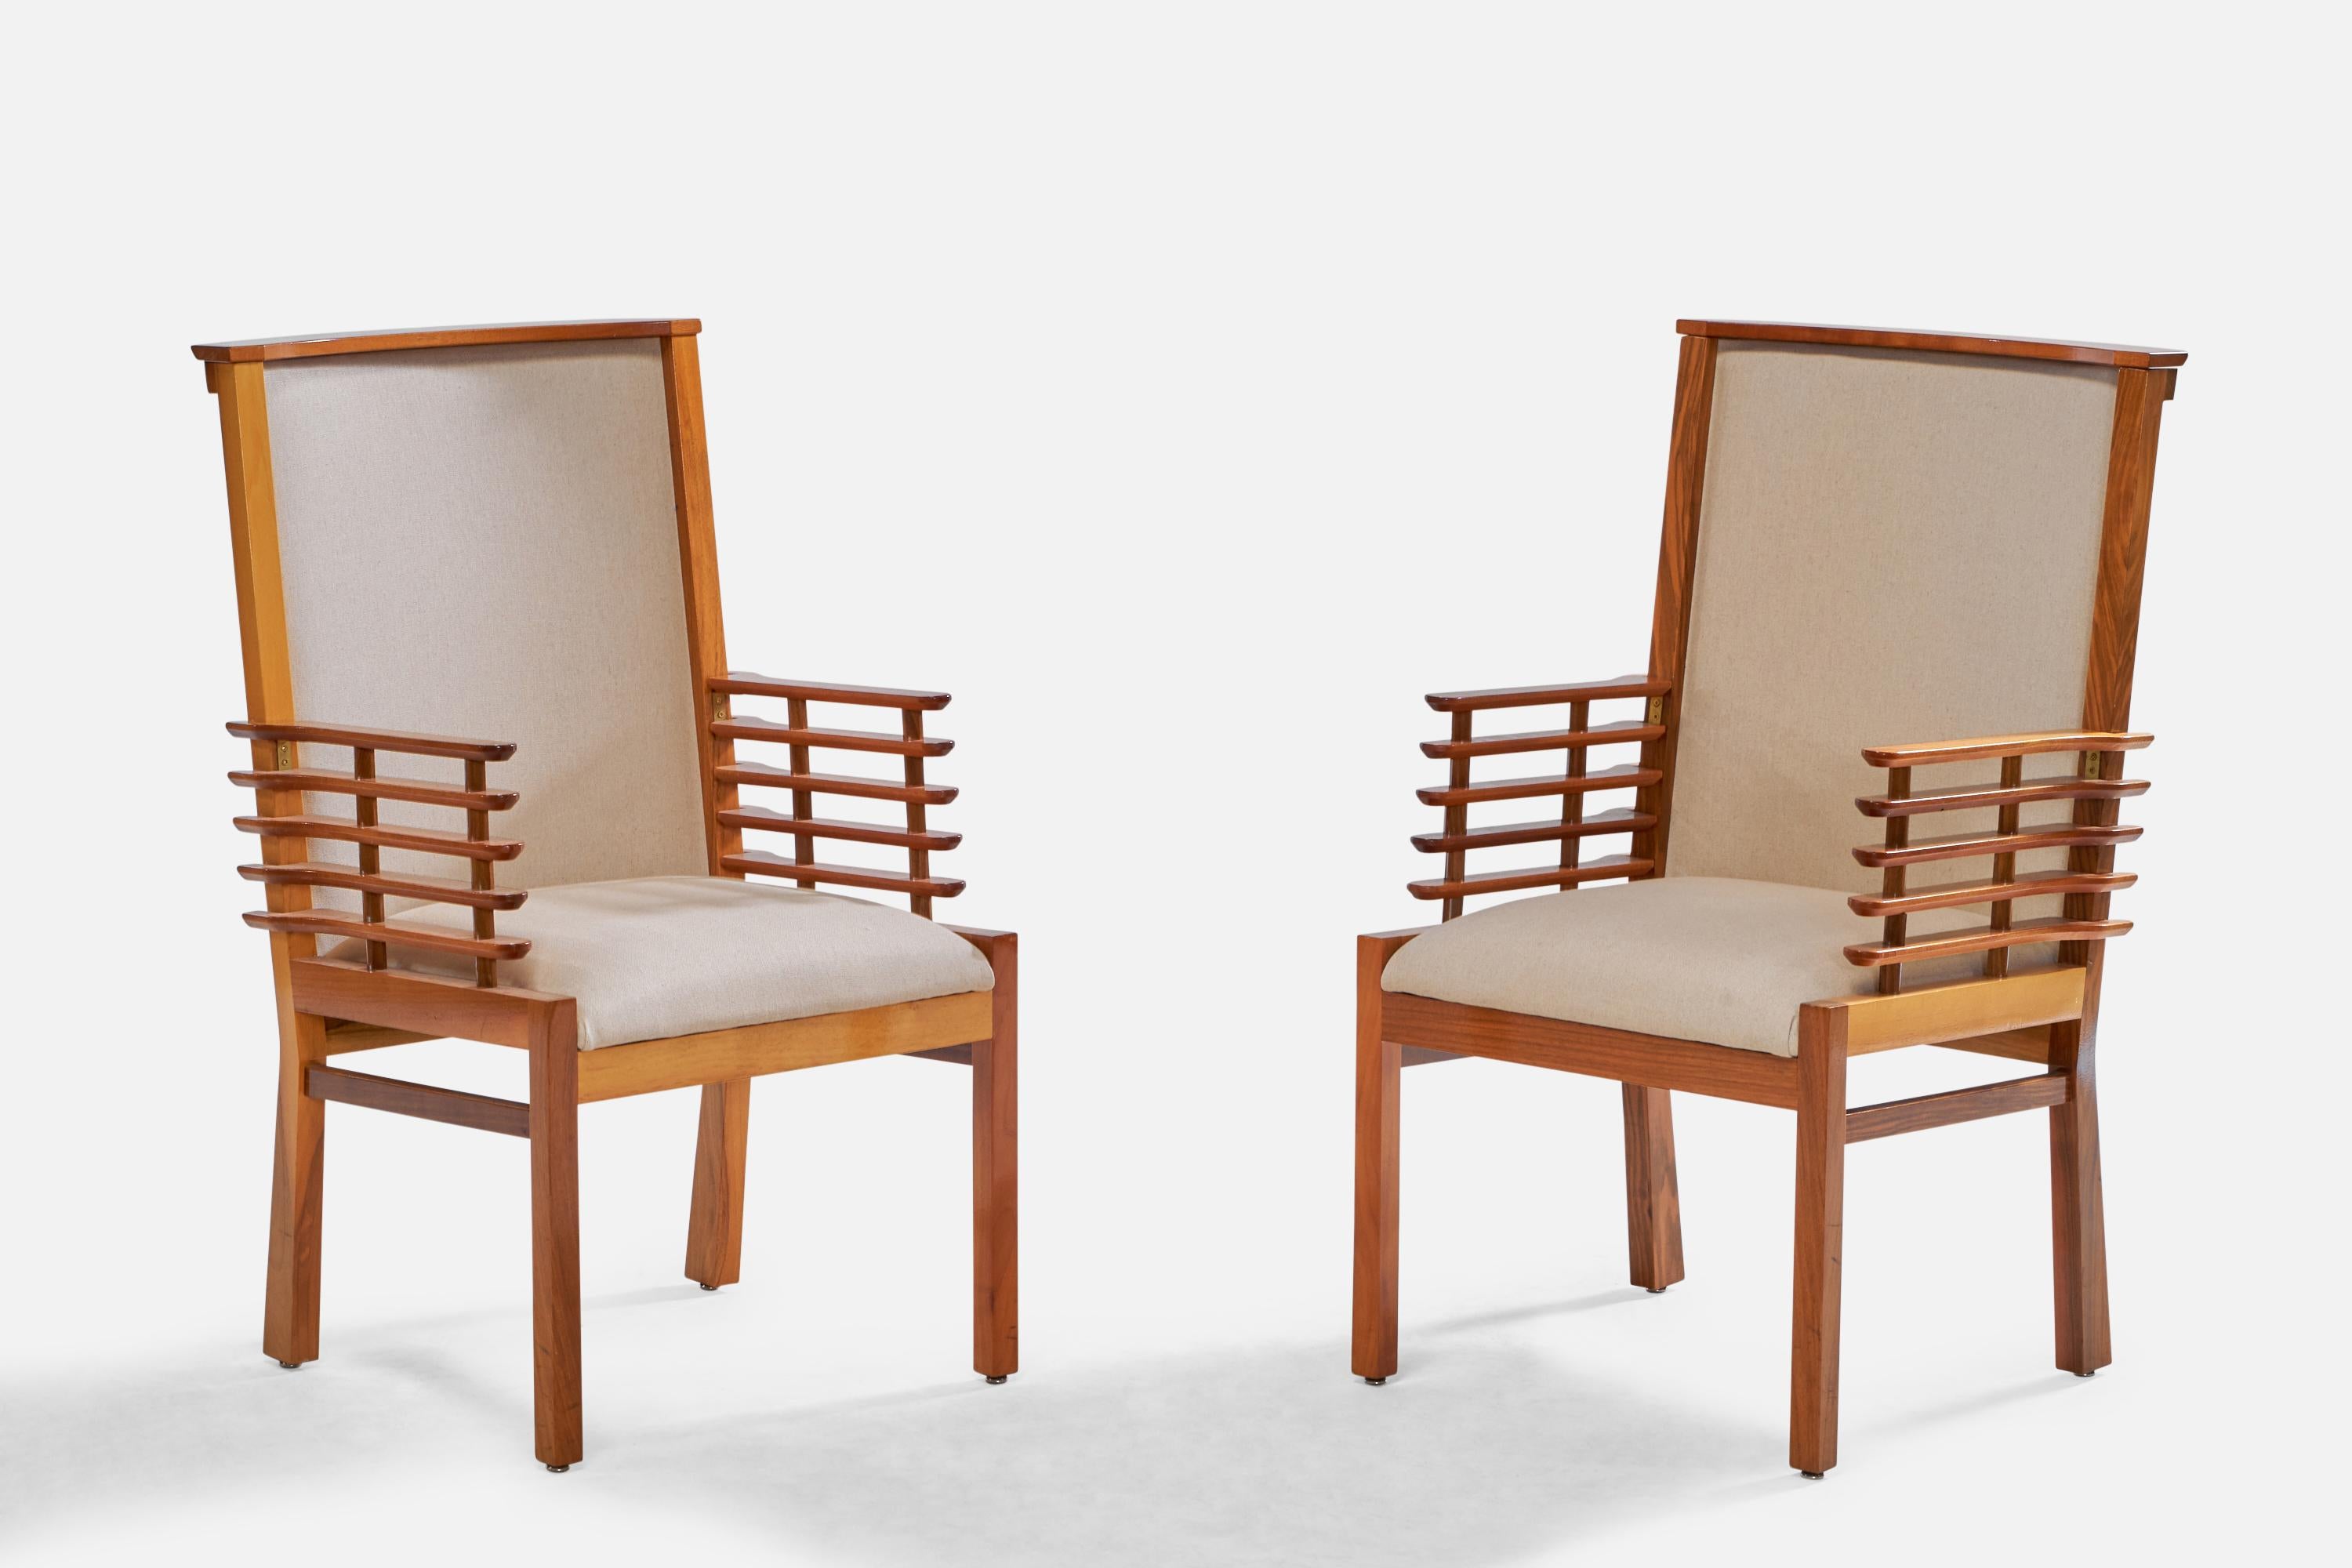 Ein Paar Sessel aus Nussbaumholz und cremefarbenem Stoff, entworfen und hergestellt in Finnland, 1950er Jahre. 

Provenienz: Helsingin Puhelinyhdistys

Sitzhöhe: 19,5